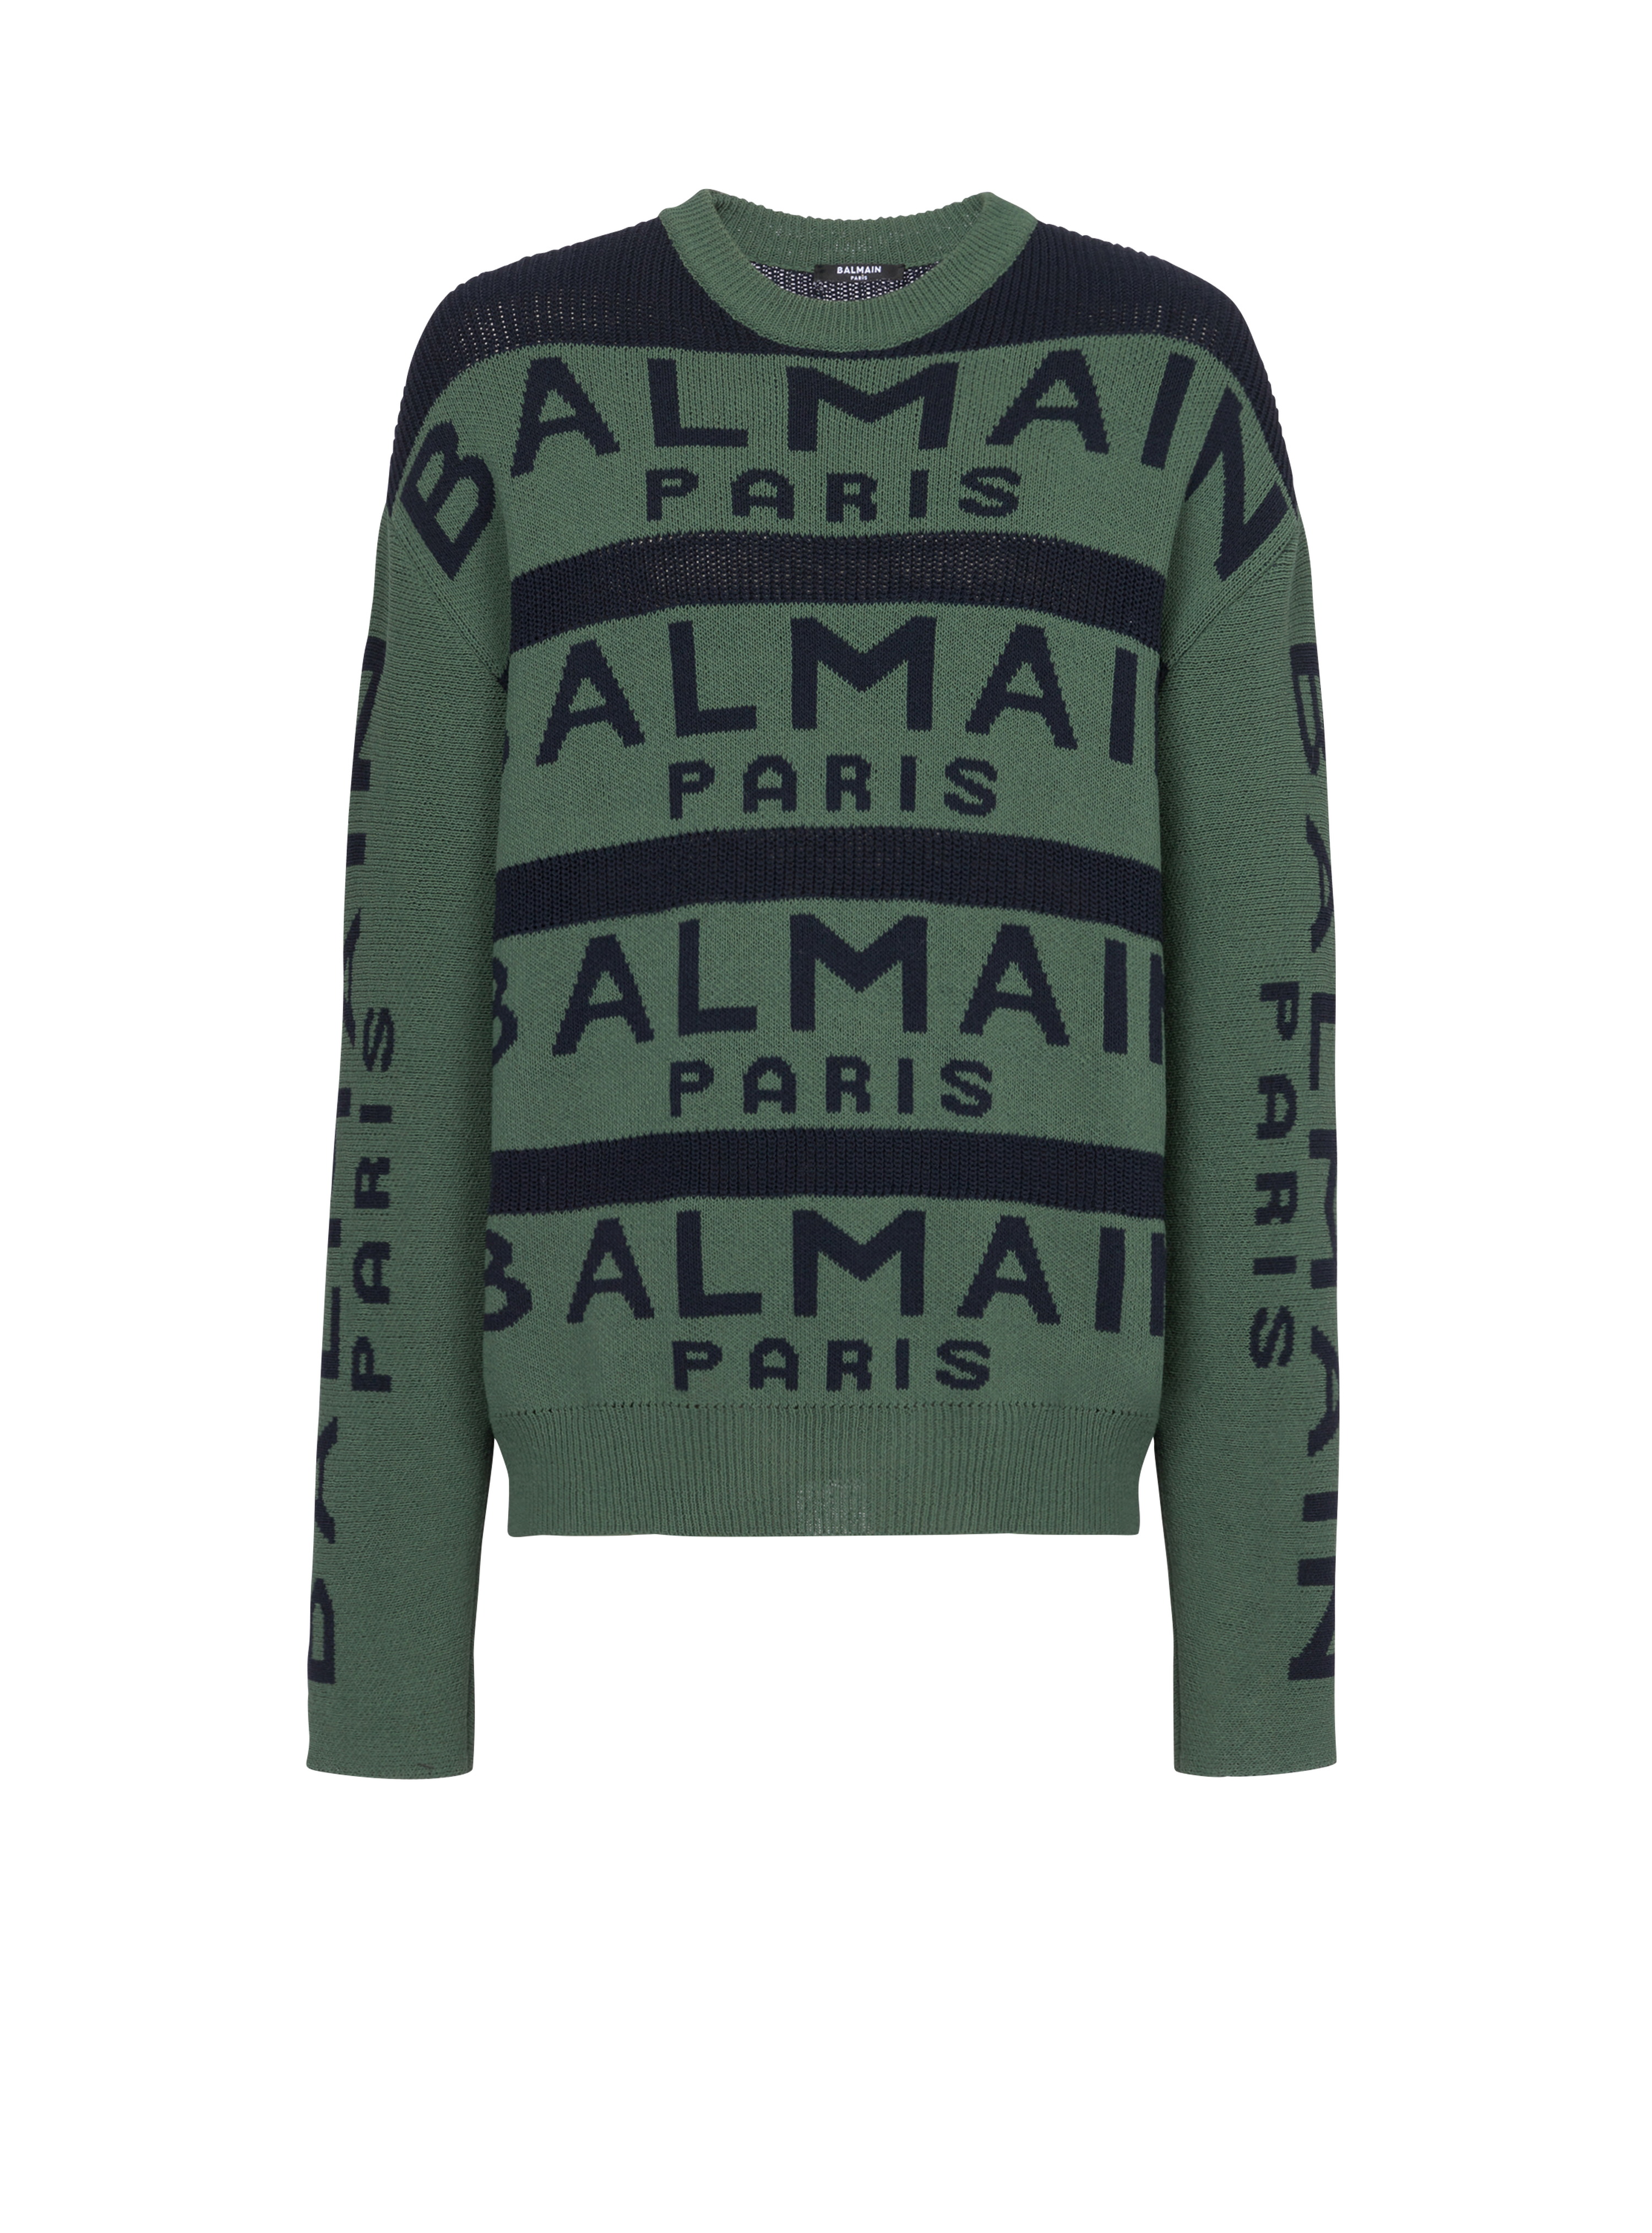 Balmain Paris 로고 자수 디테일 스웨터, green